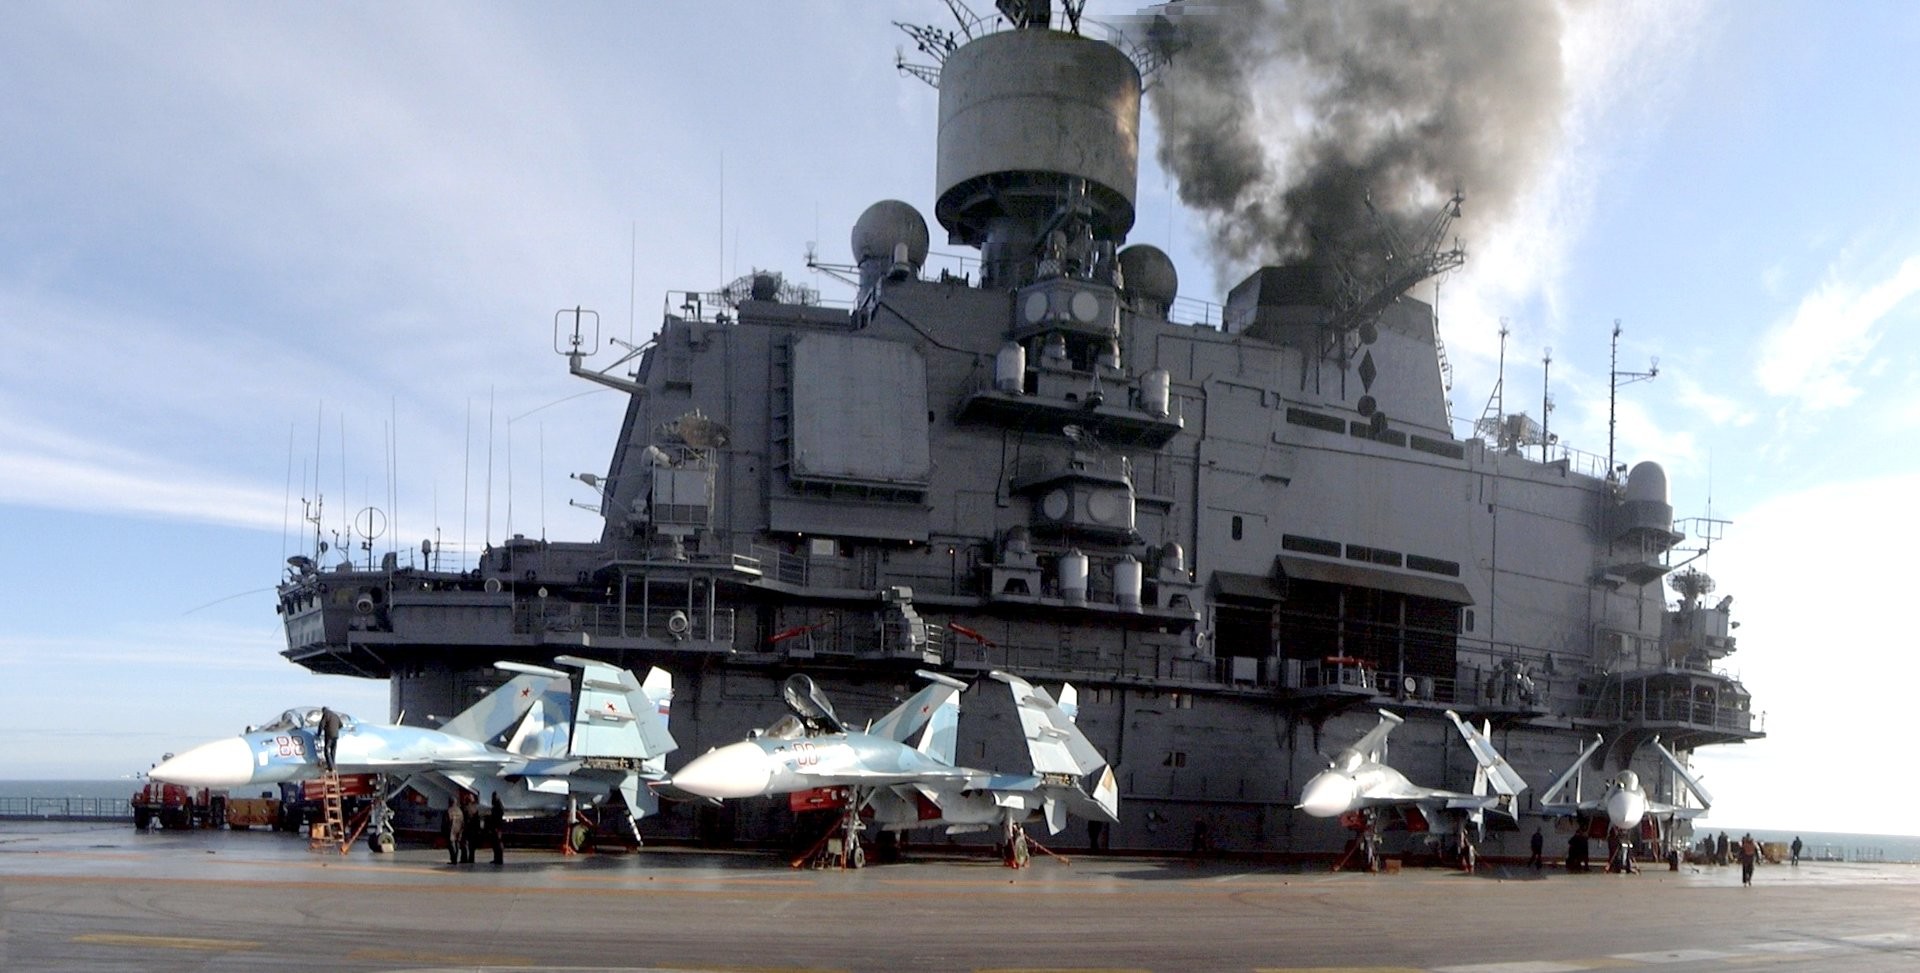 Авианесущем крейсере «Адмирал Кузнецов»